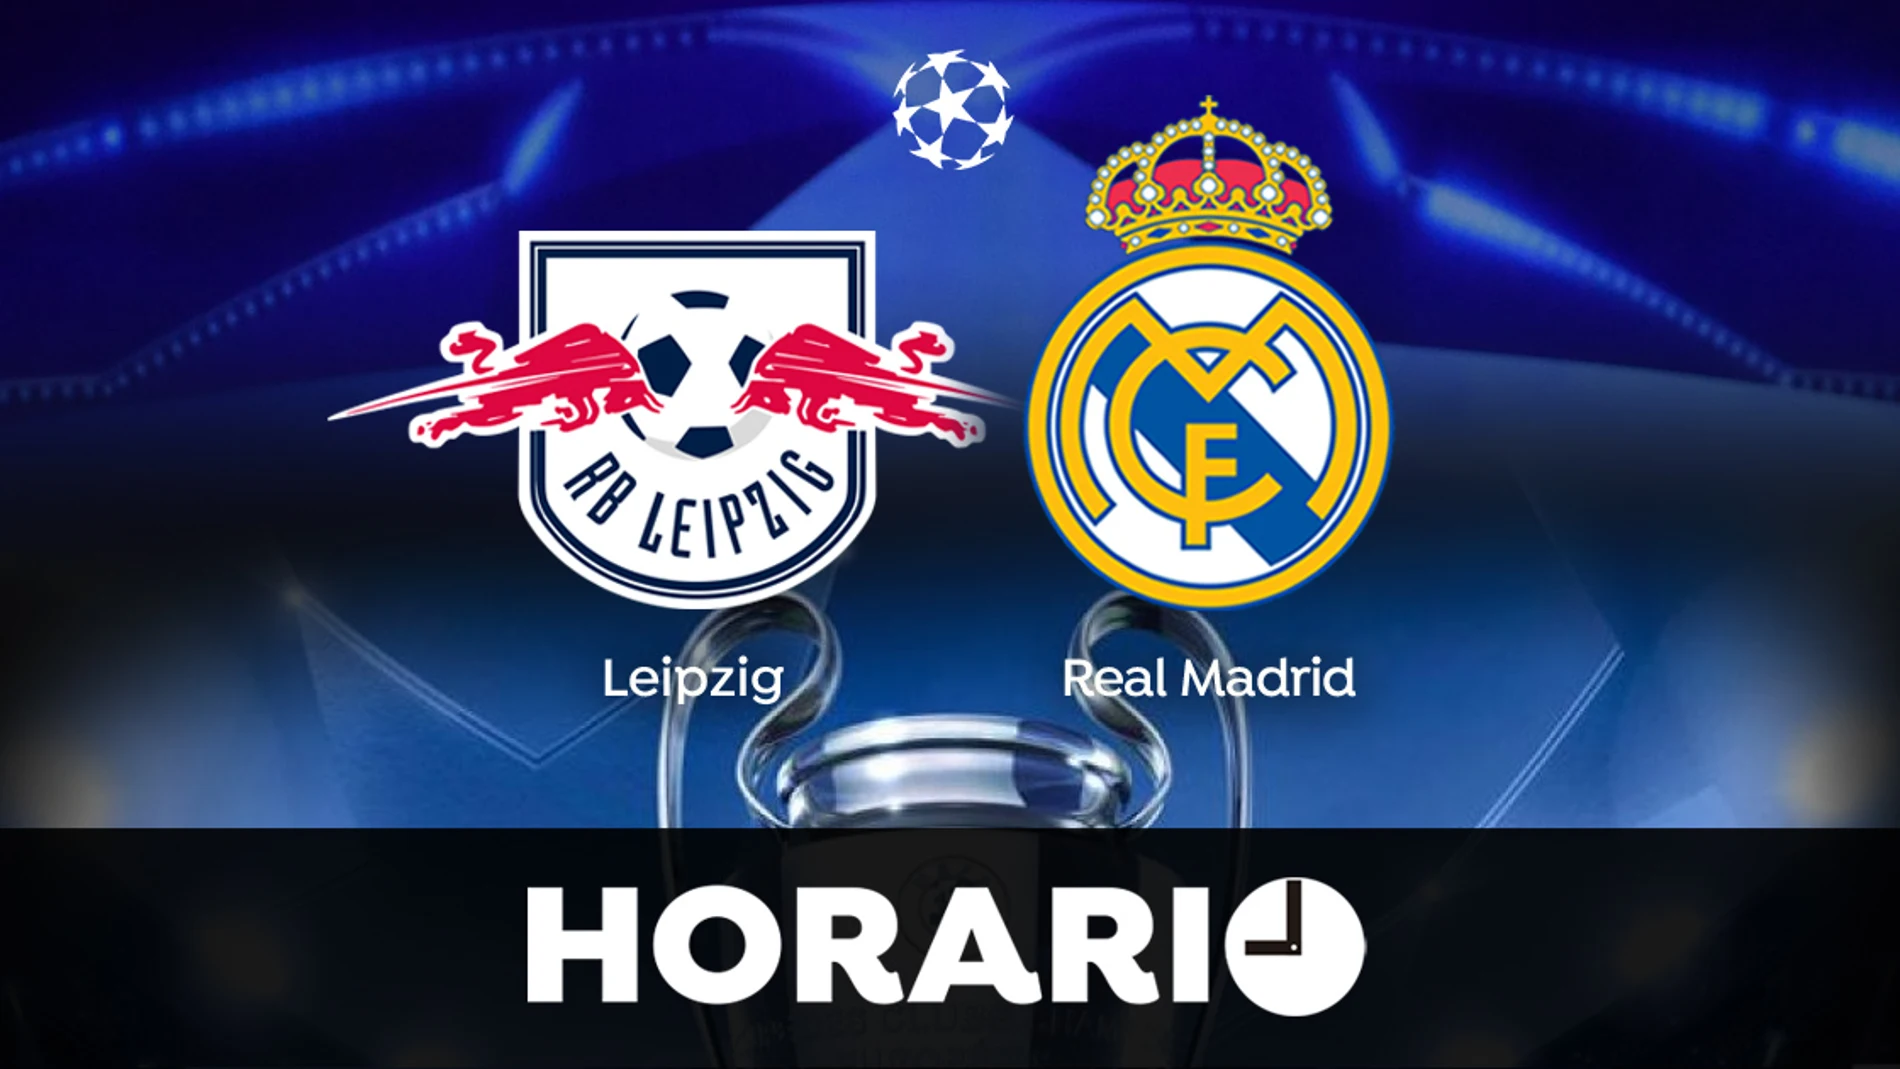 Leipzig - Real Madrid: Horario y el partido Champions League en directo